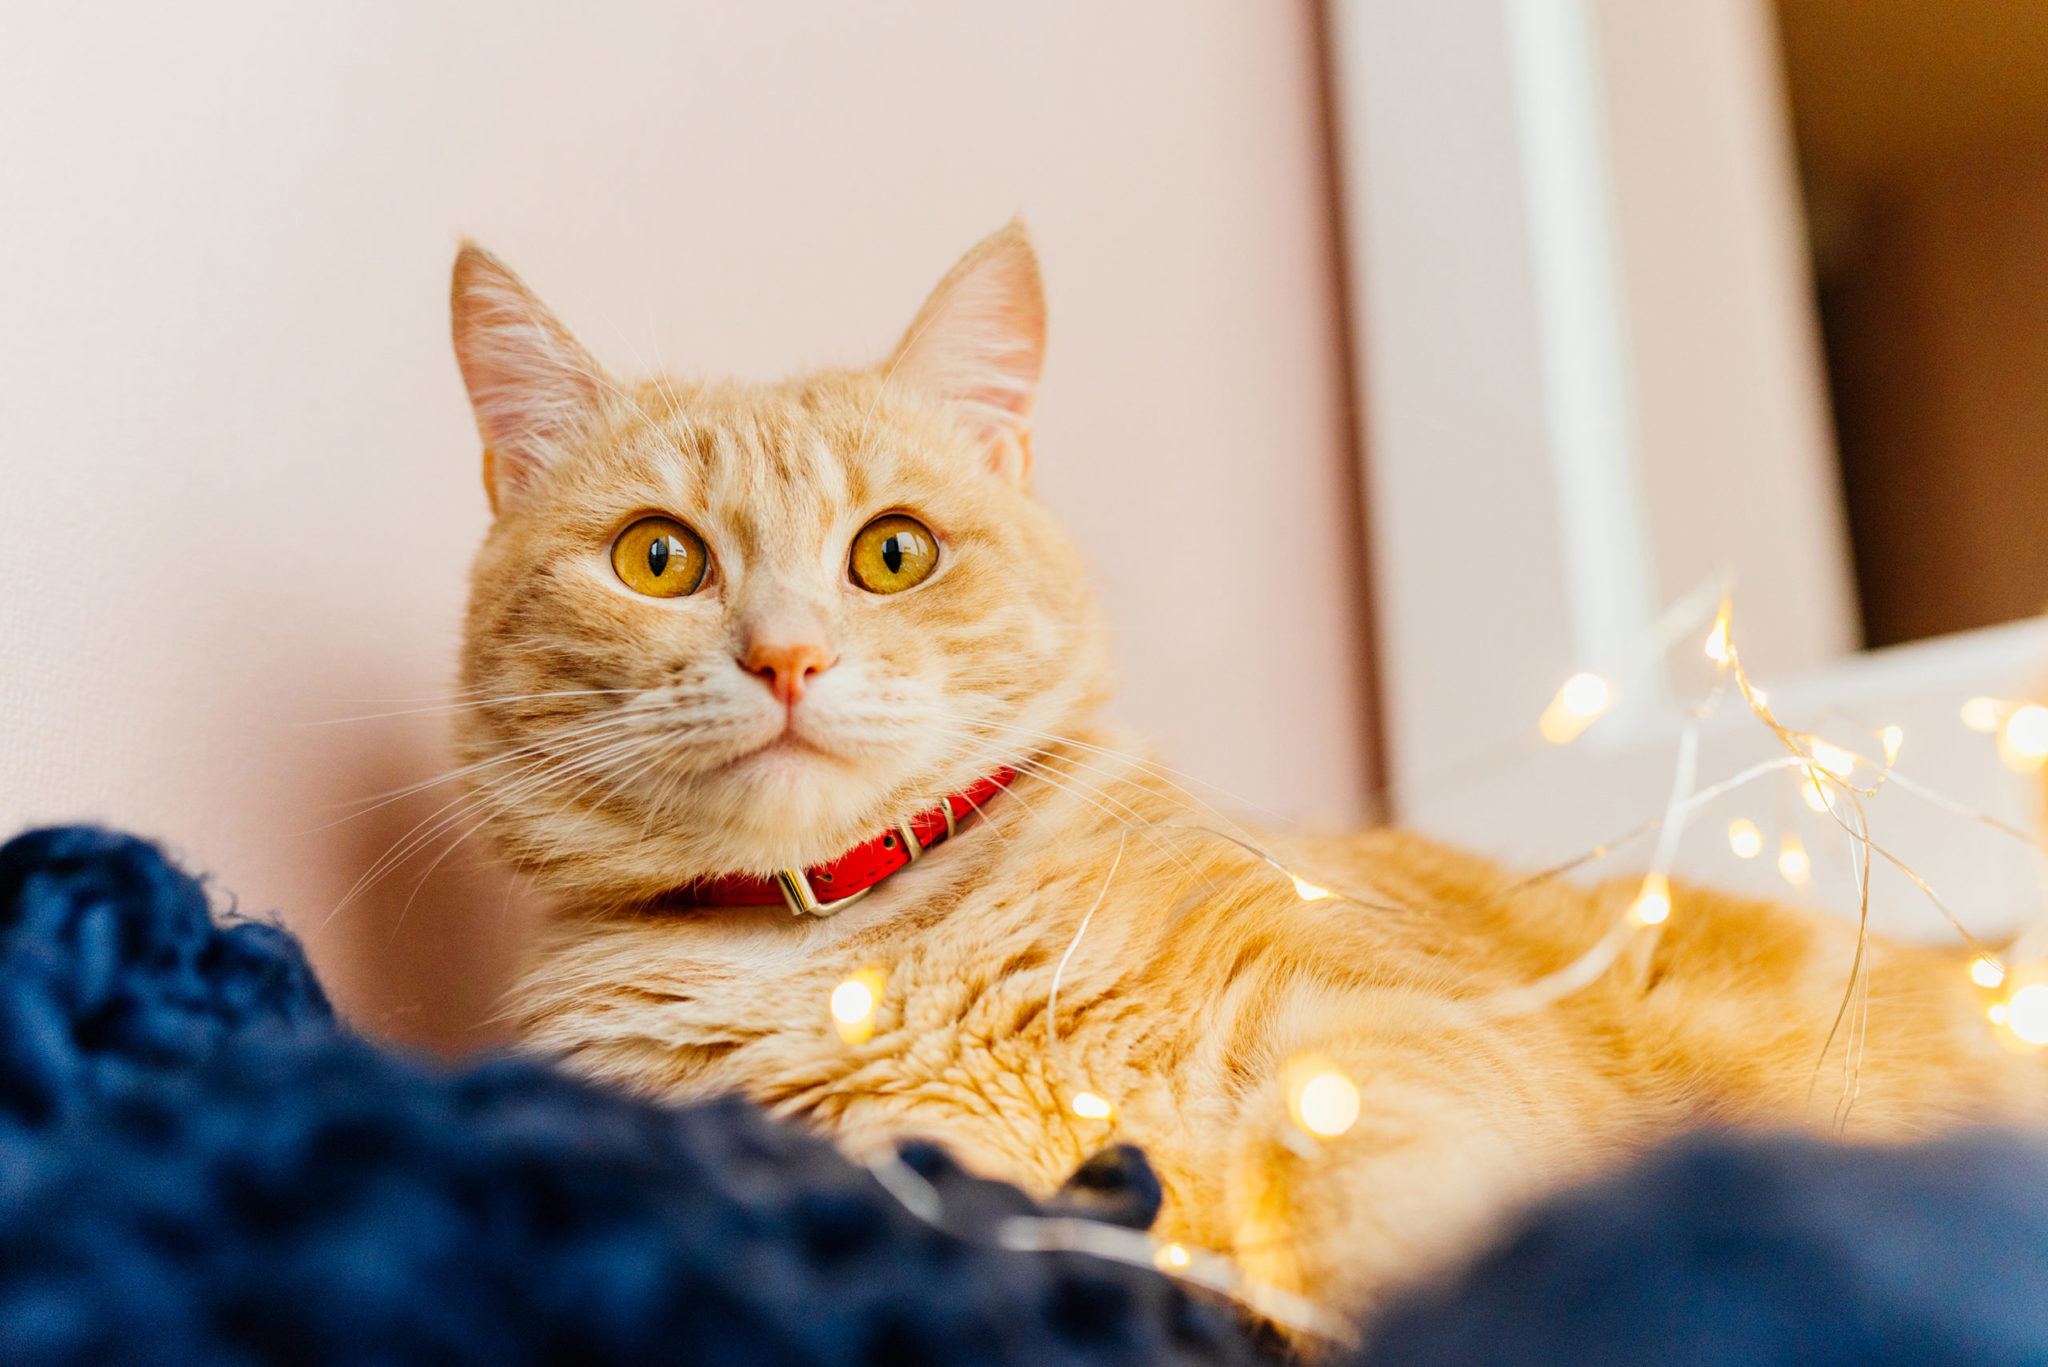 Pets e a decoração de Natal